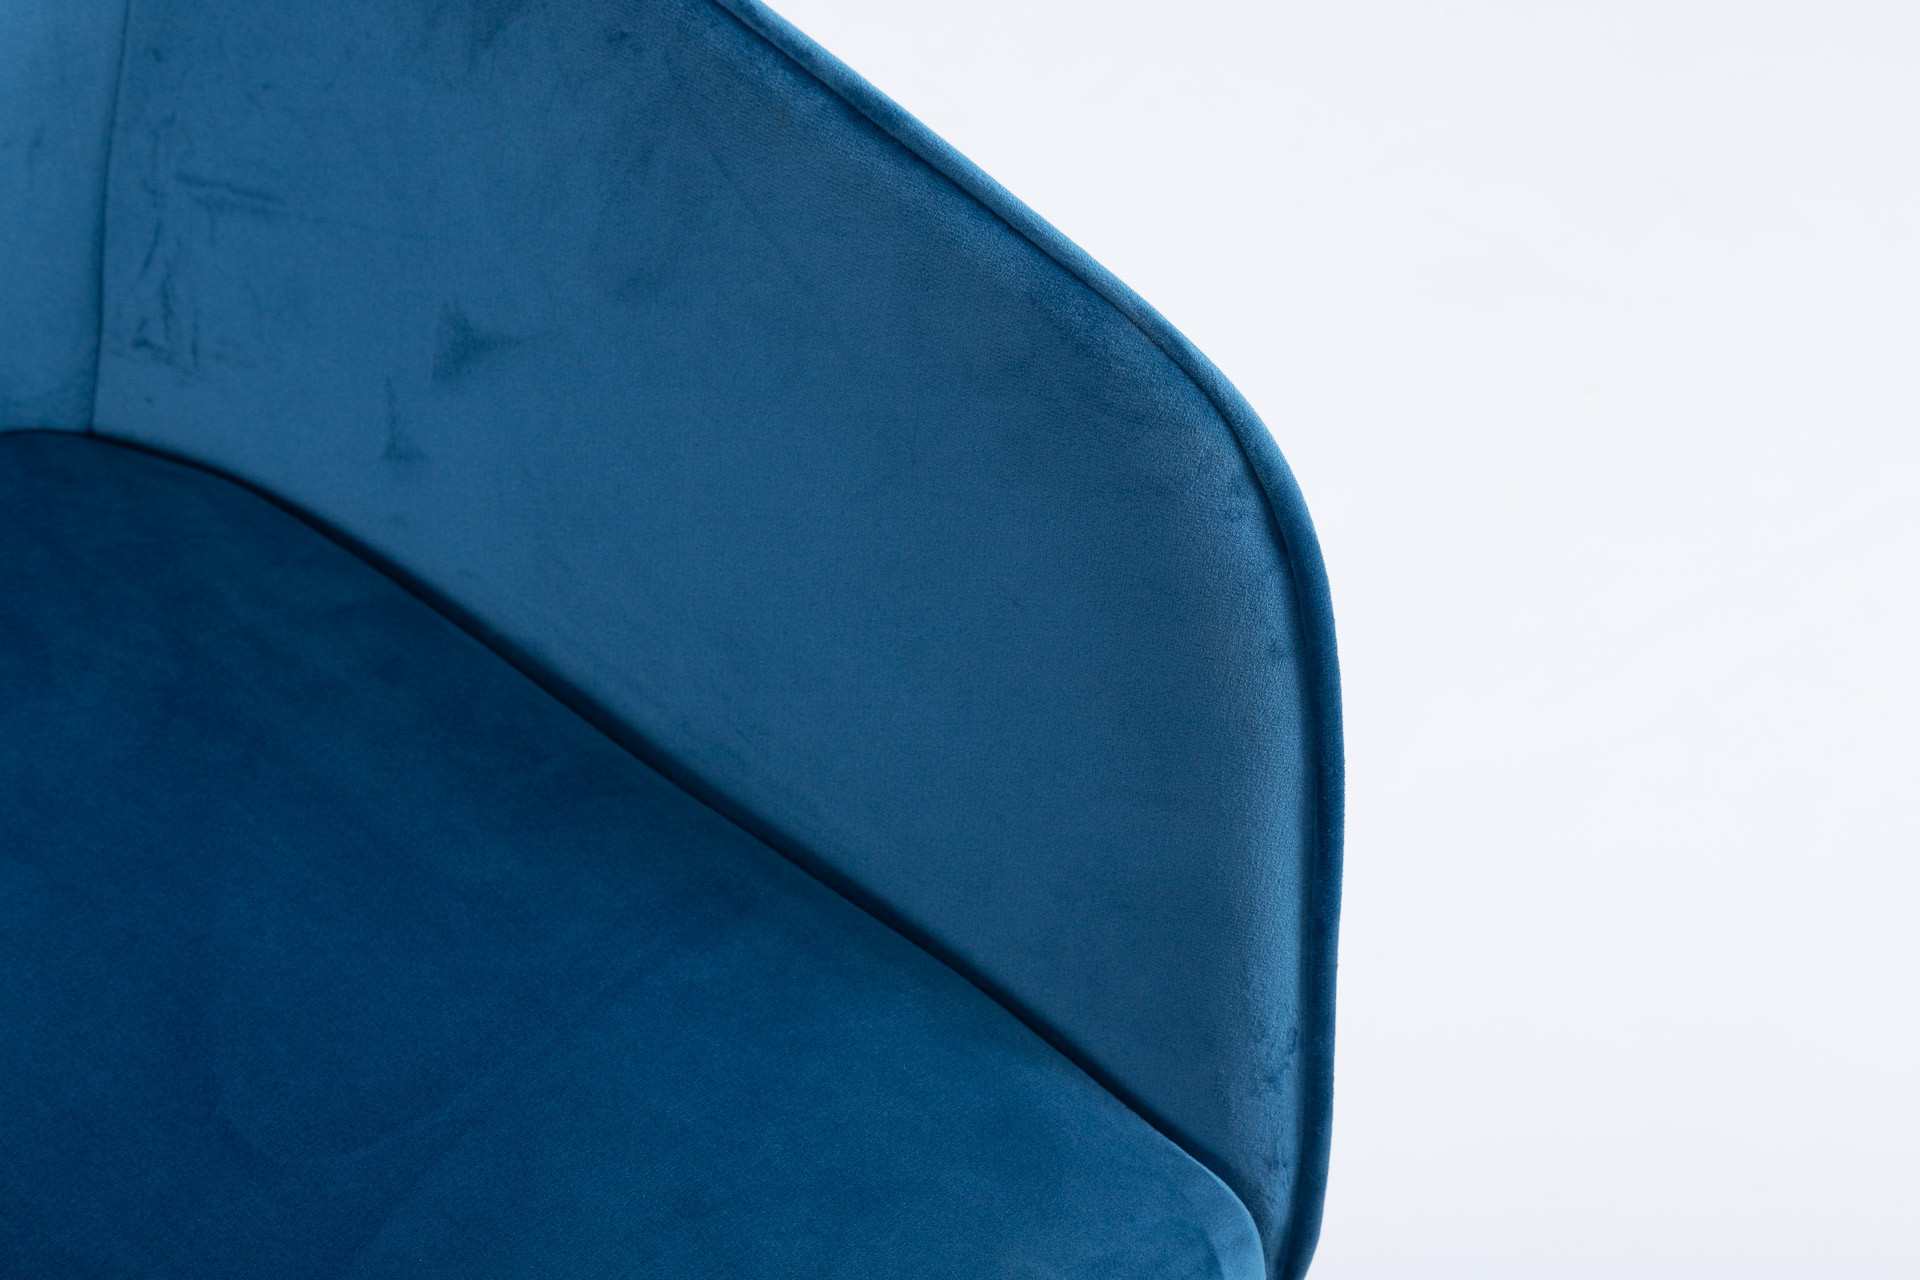 Кресло поворотное модерн NL- Galera (Галера) синий